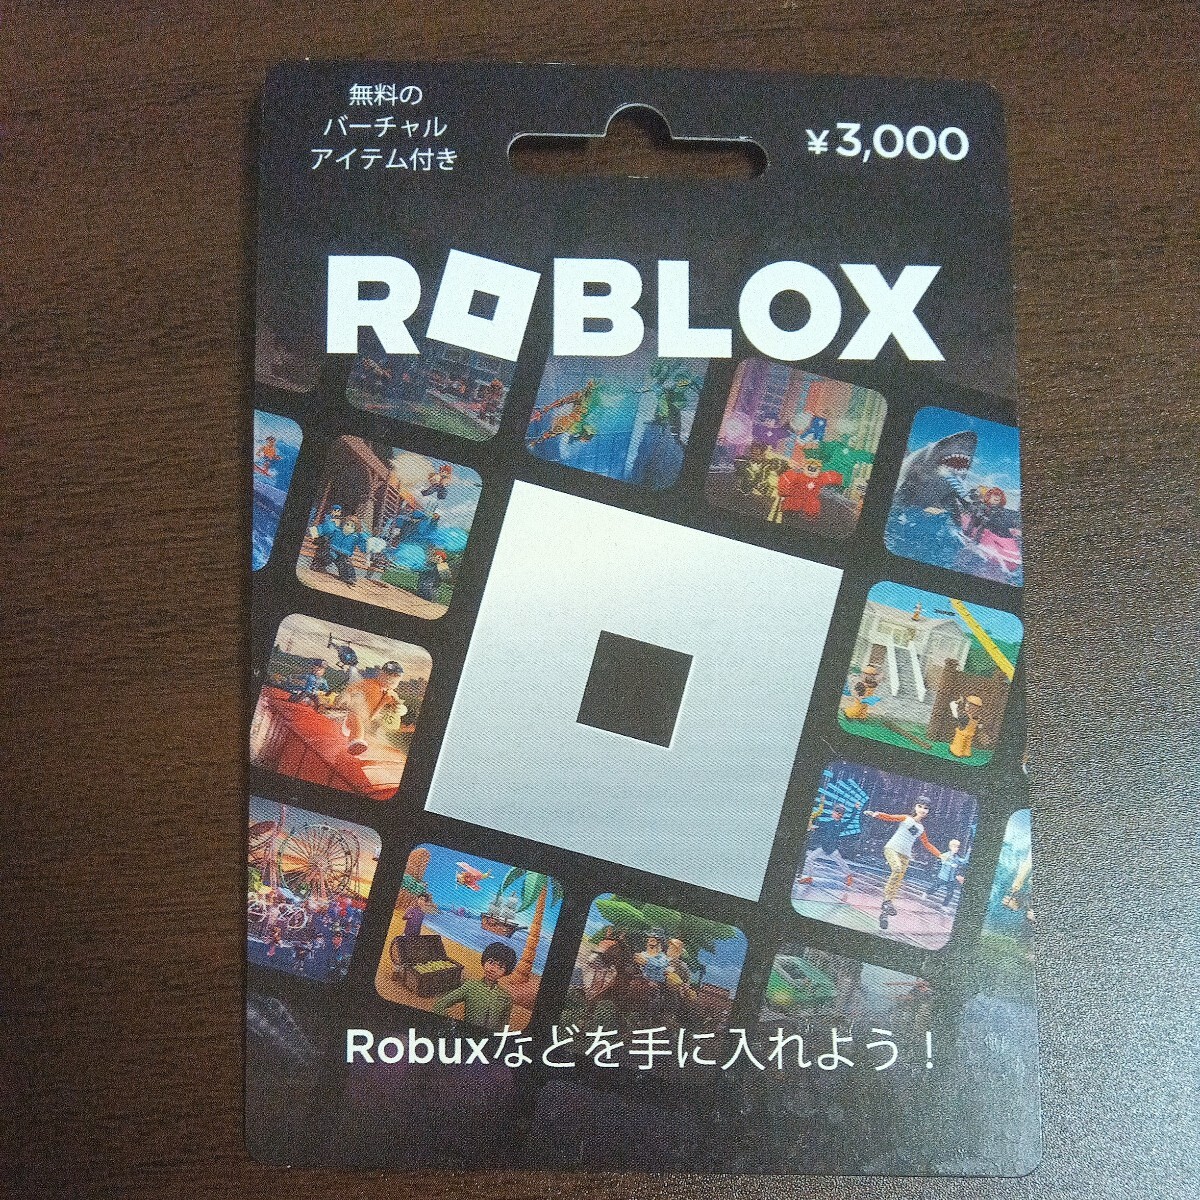 3000 иен минут ro блок s(ROBLOX) карта предоплаты 